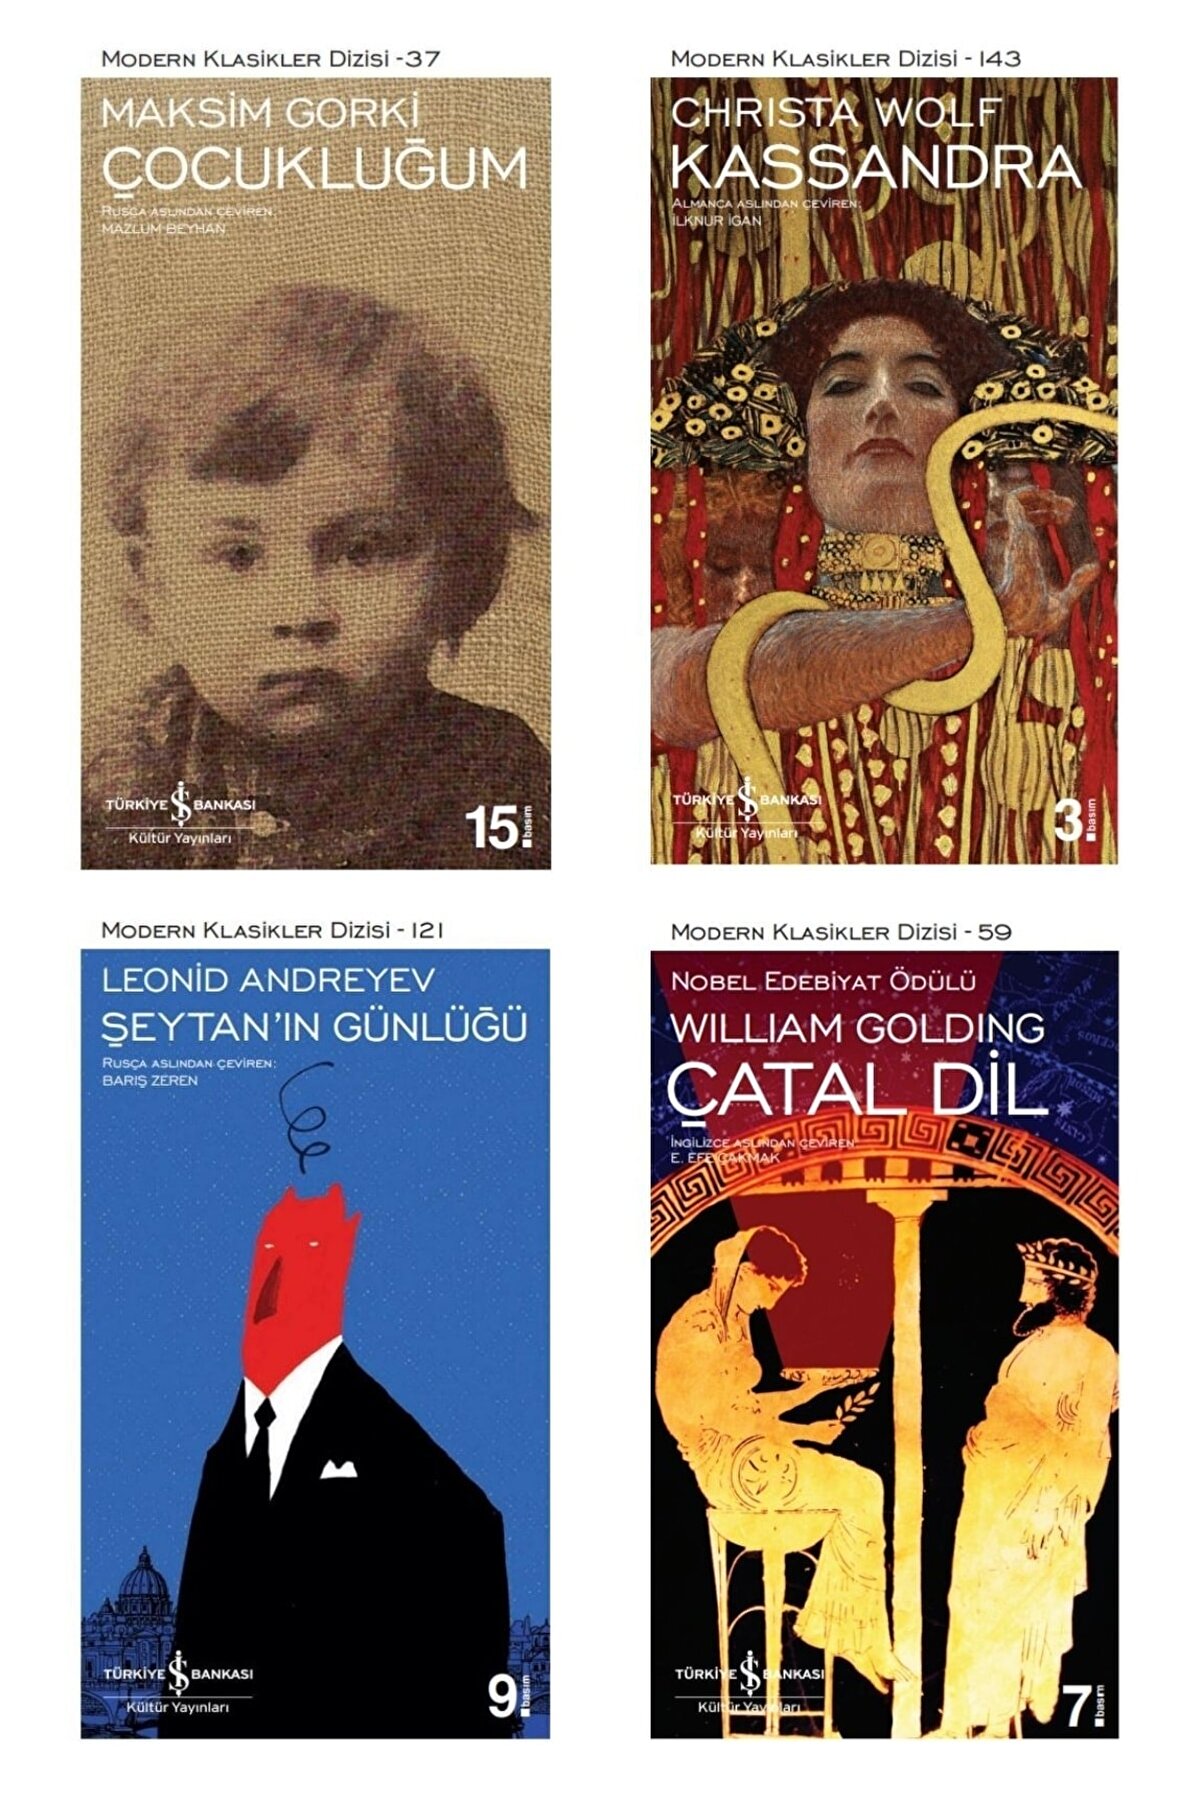 Türkiye İş Bankası Kültür Yayınları Çocukluğum - Kassandra - Çatal Dil - Şeytan'ın Günlüğü - Iş Bankası 4 Kitap Tatil Seti